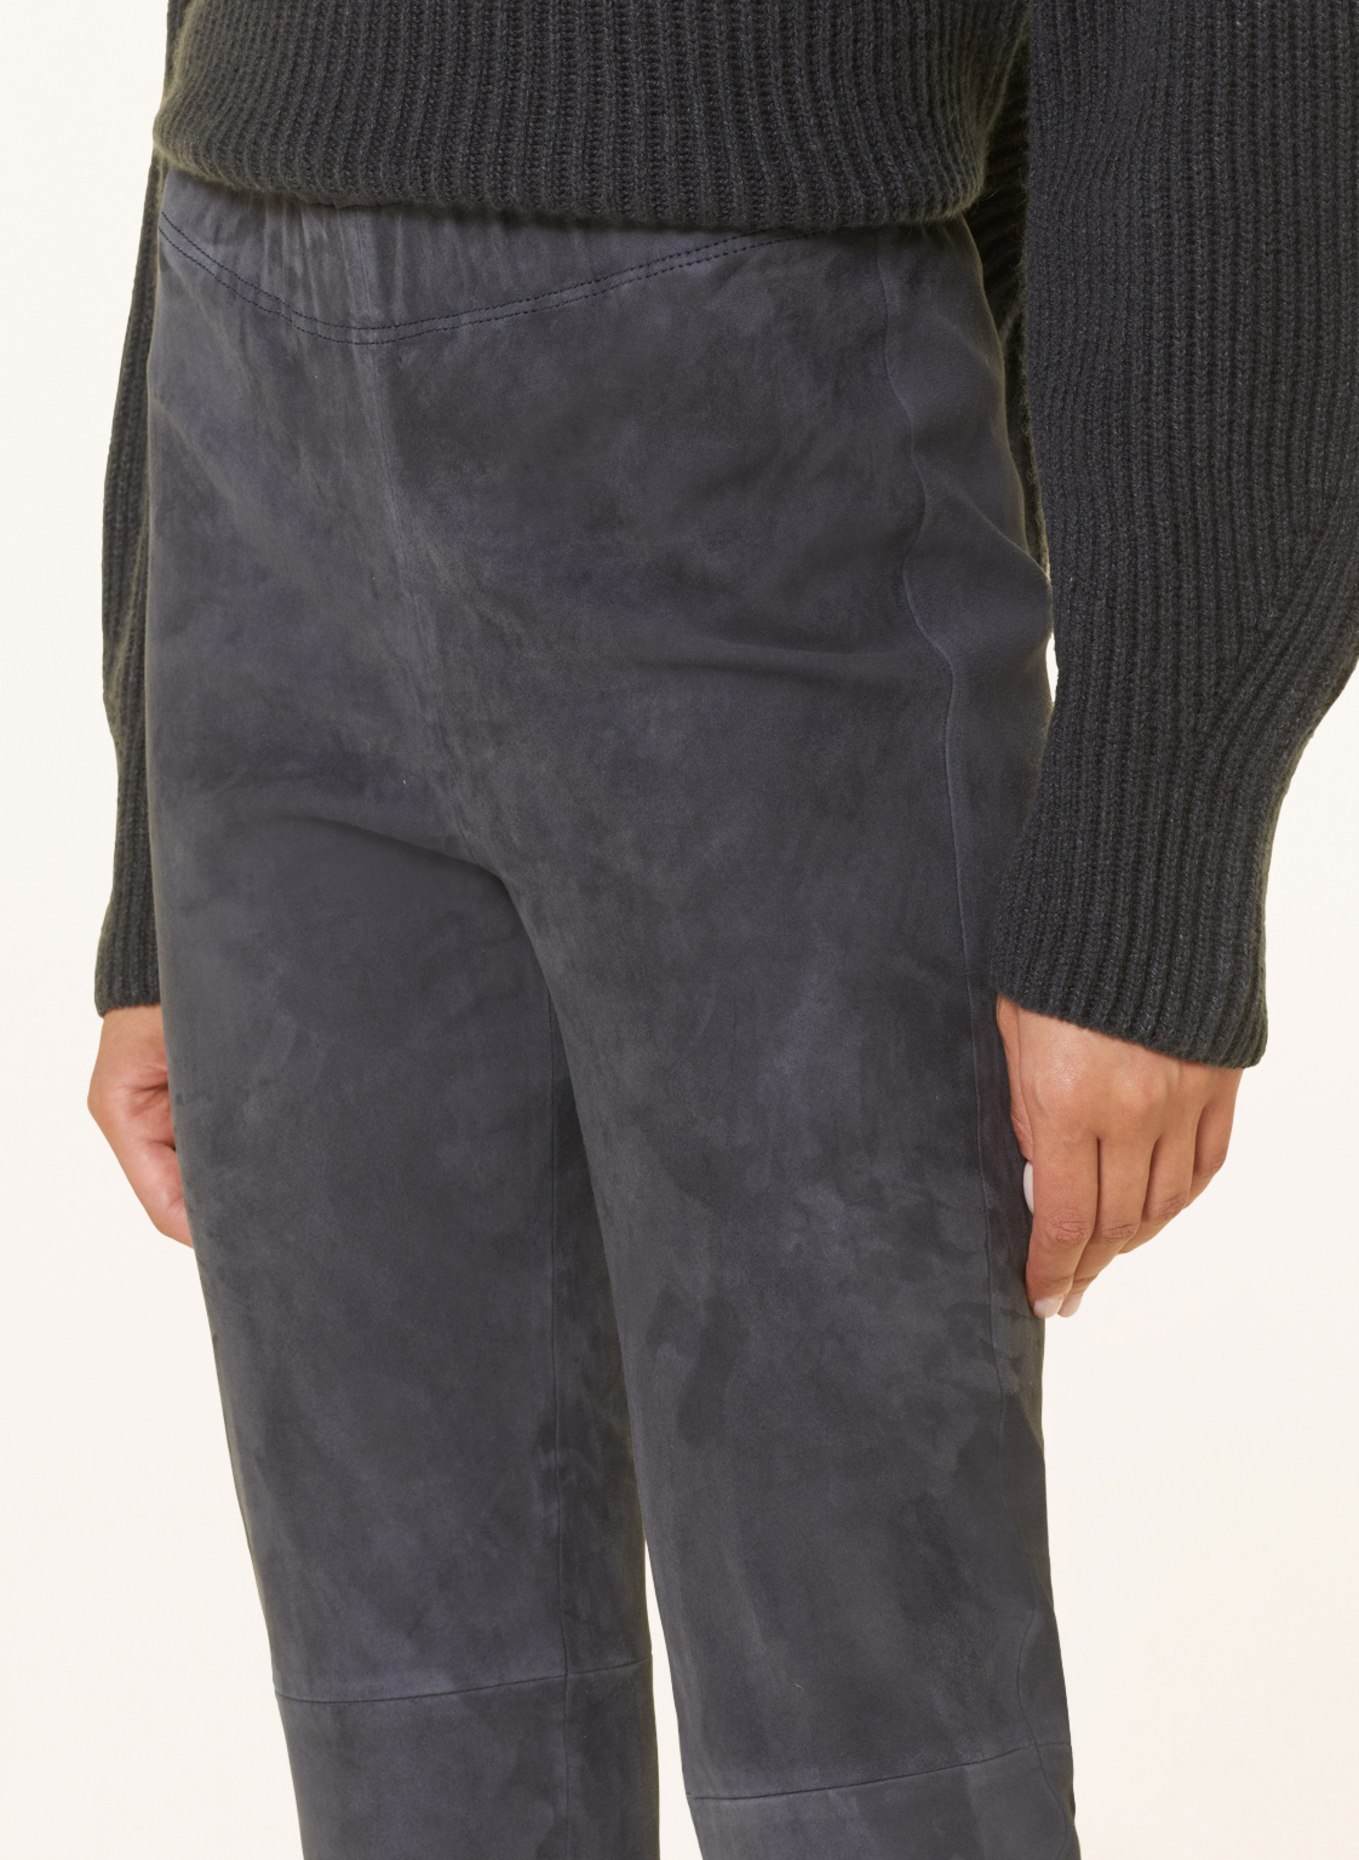 IRIS von ARNIM Leather leggings PHILINE, Color: DARK GRAY (Image 5)